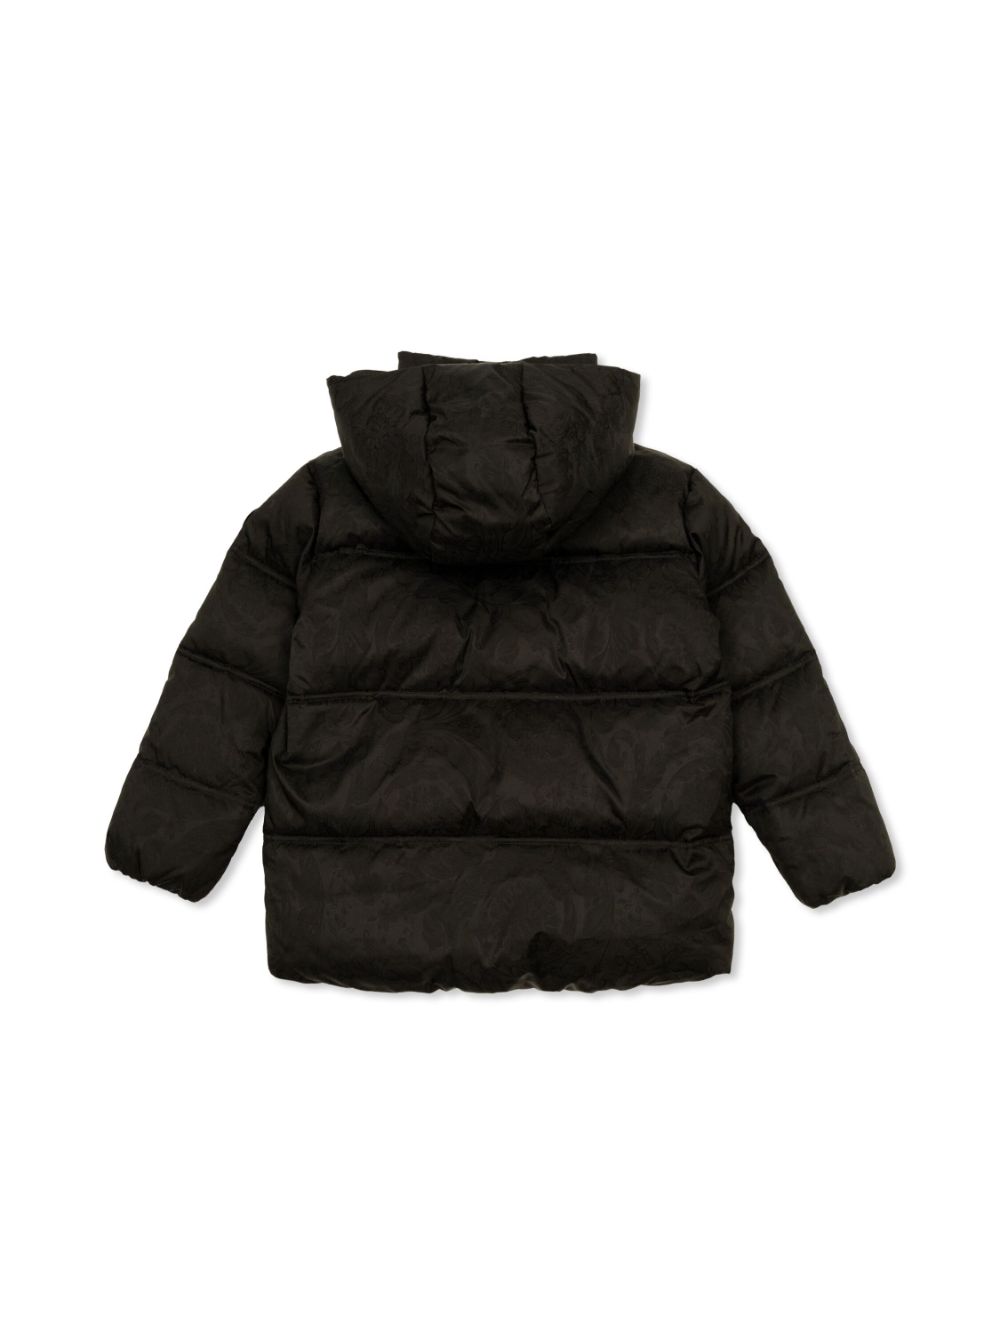 Black children's jacket